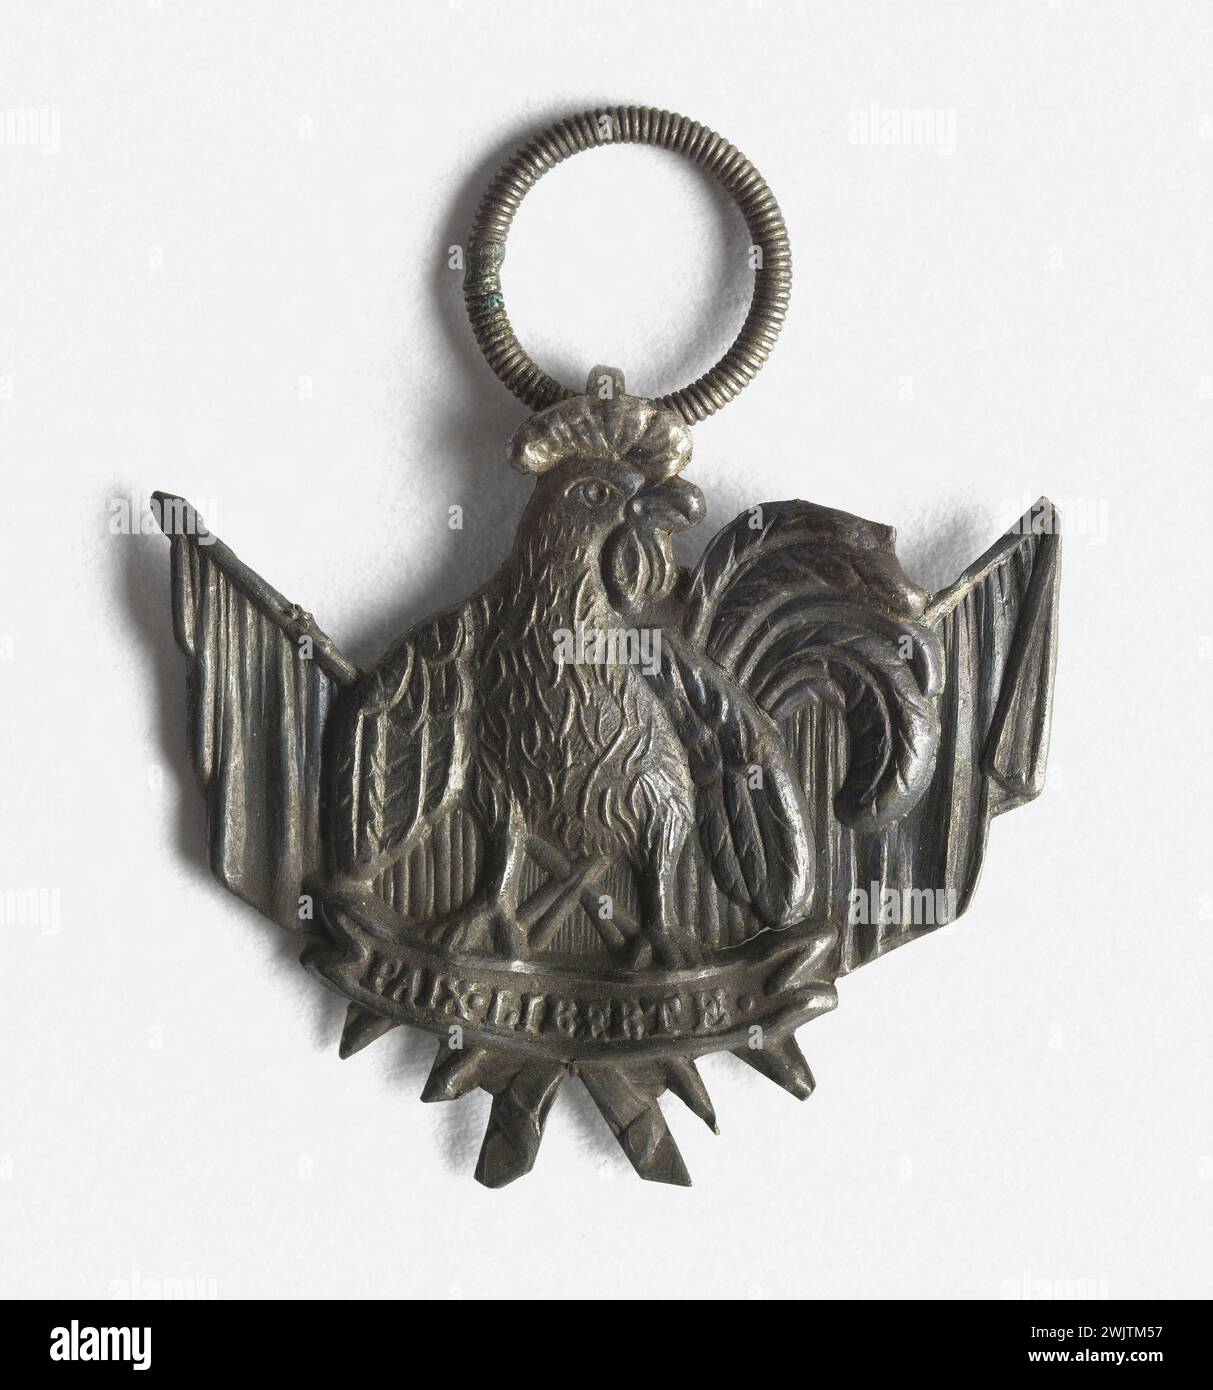 Anonyme. Coq gaulois placé sur deux courants d'air dans un long collier. 1848 (avers). Paris, musée Carnavalet. Médaille, numismatique Banque D'Images